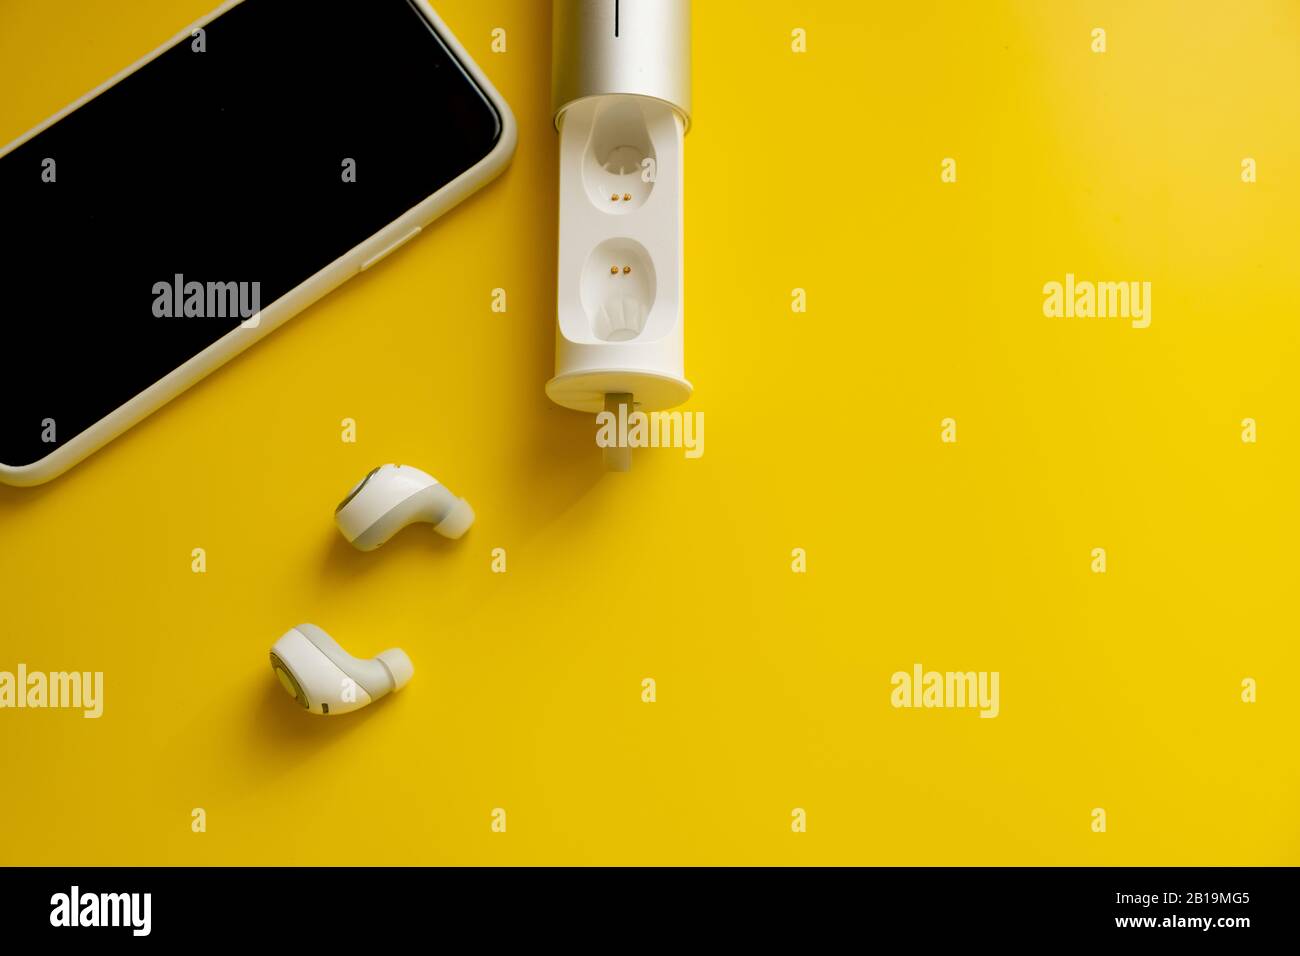 Cuffie wireless bianche per smartphone su sfondo giallo brillante, concetto di minimalismo Foto Stock